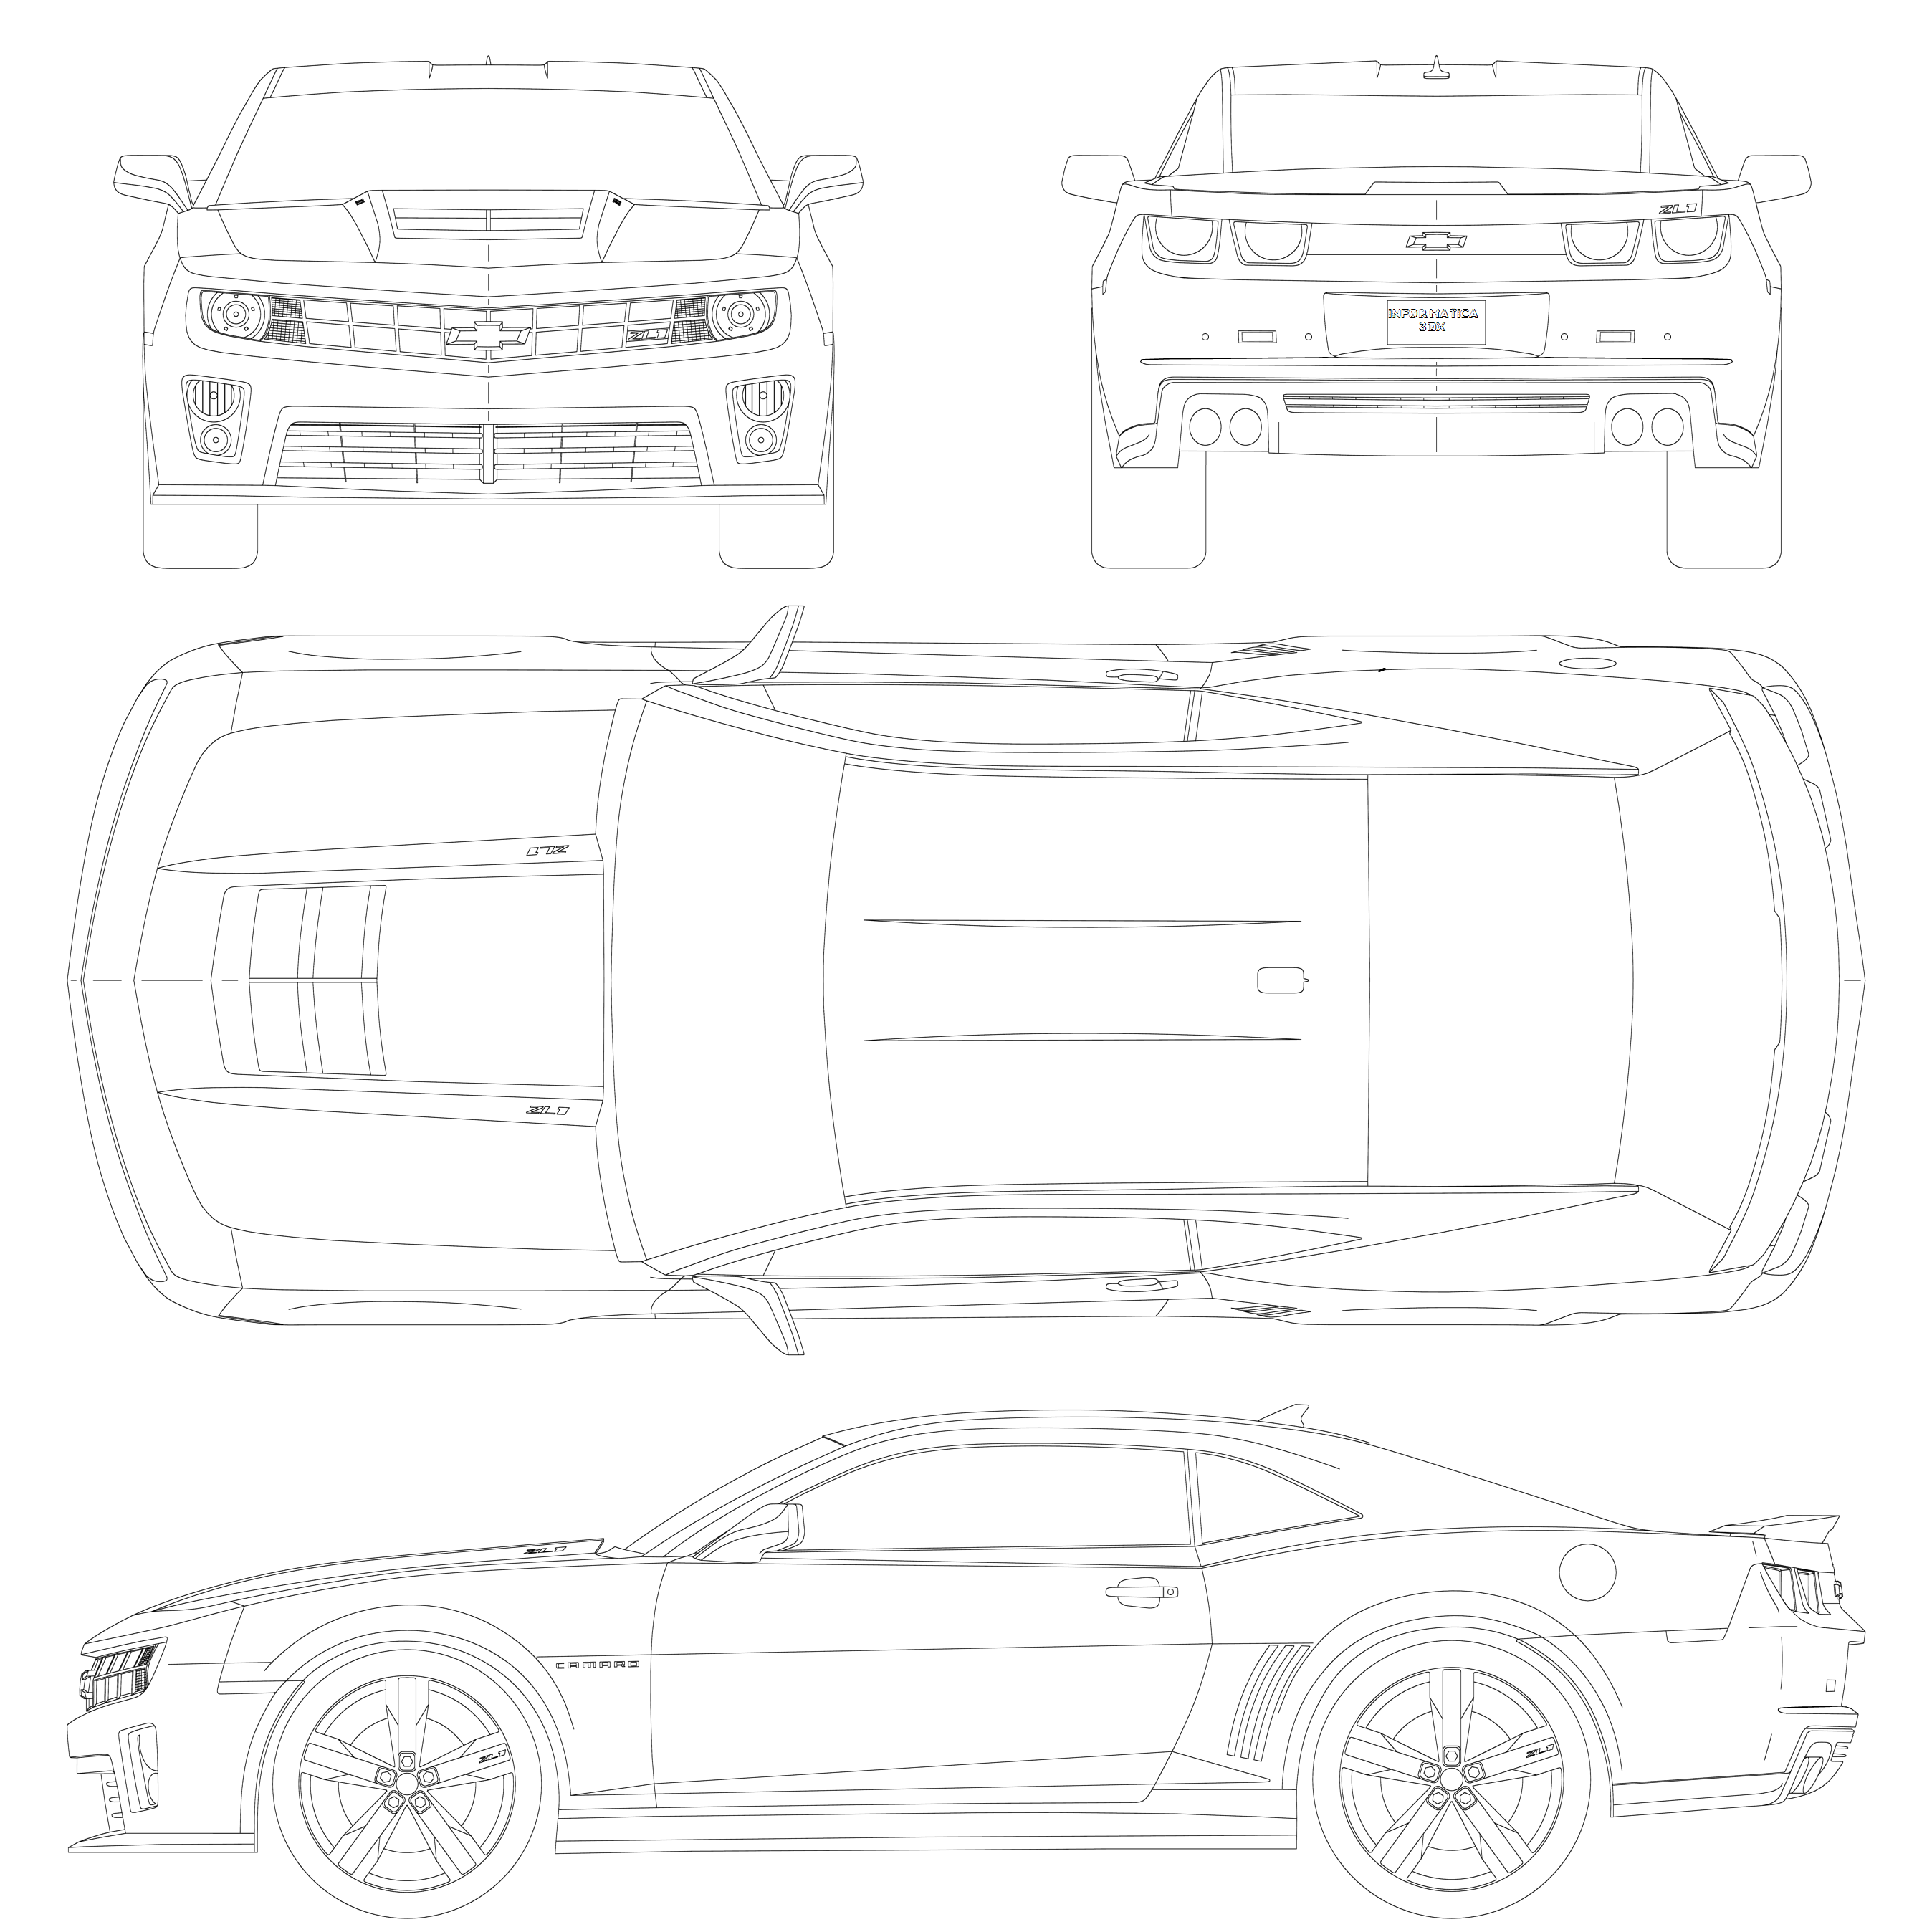 Как сделать чертеж машины. Chevrolet Camaro 2010 Blueprint. Chevrolet Camaro zl1 габариты. Chevrolet Camaro zl1 чертёж. Chevrolet Camaro zl1 Blueprint.